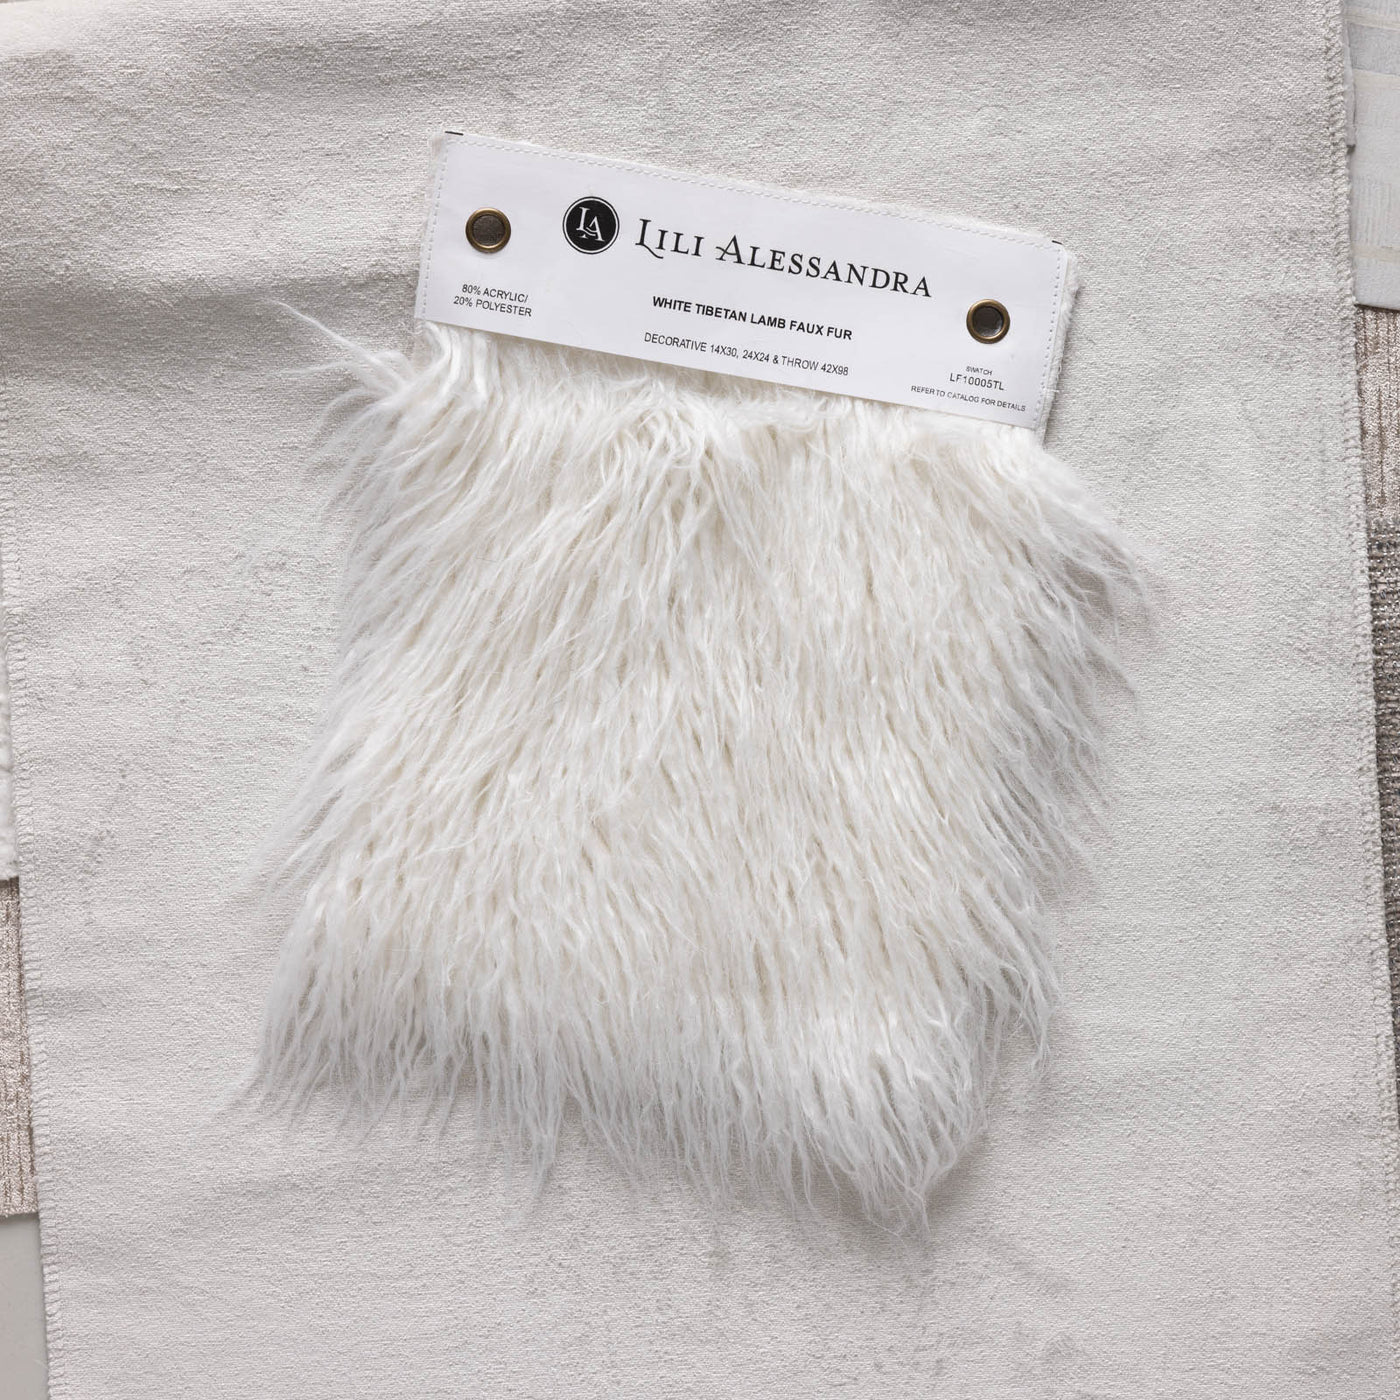 Coco White Tibetan Lamb Faux Fur Swatch 8.5X11